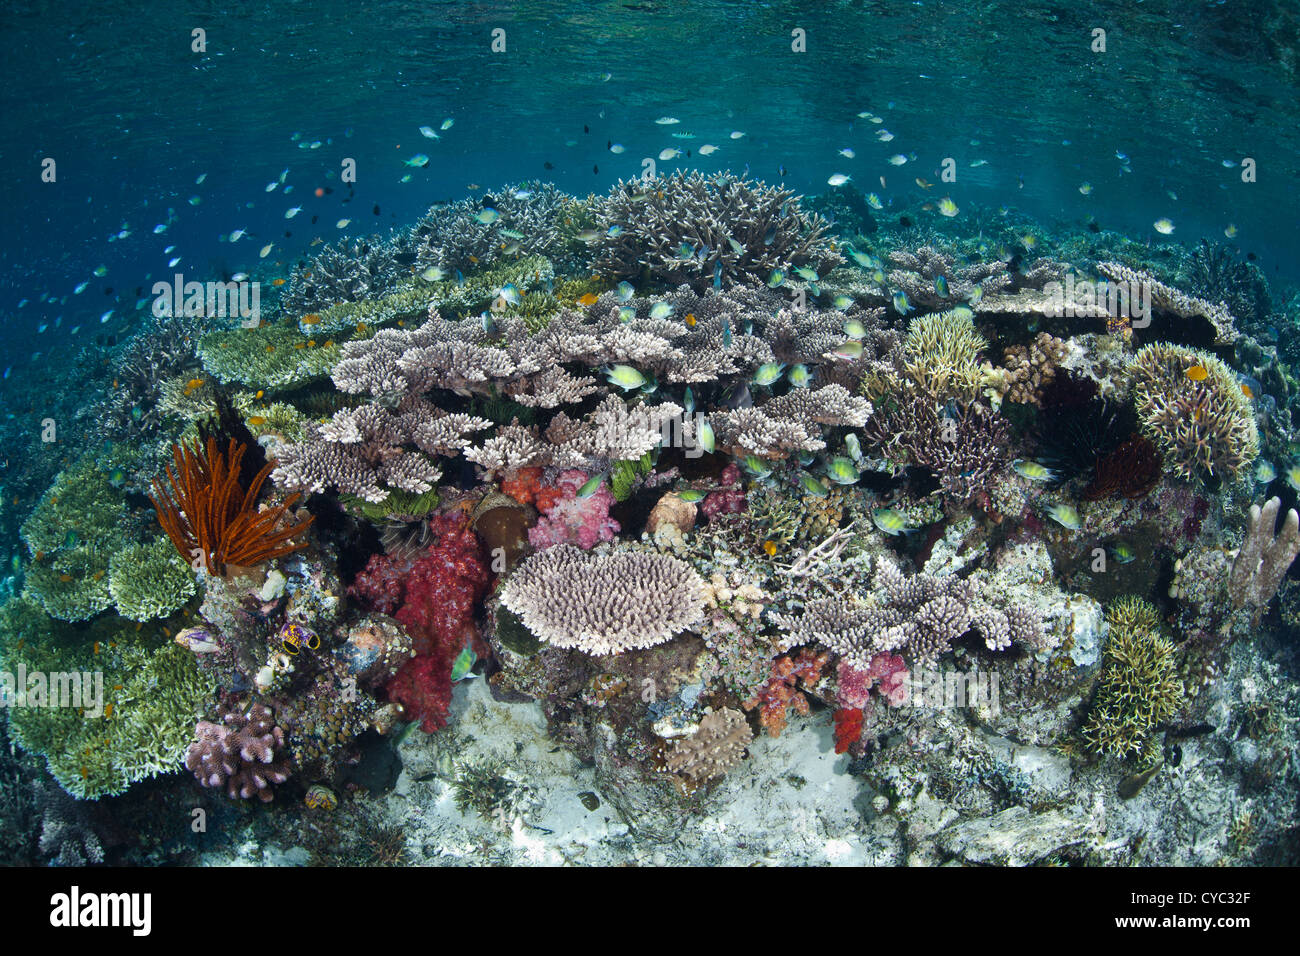 Les petits poissons de récif, principalement demoiselle espèces, survolez un large récif de corail à proximité de l'île de Misool, Indonésie. Banque D'Images